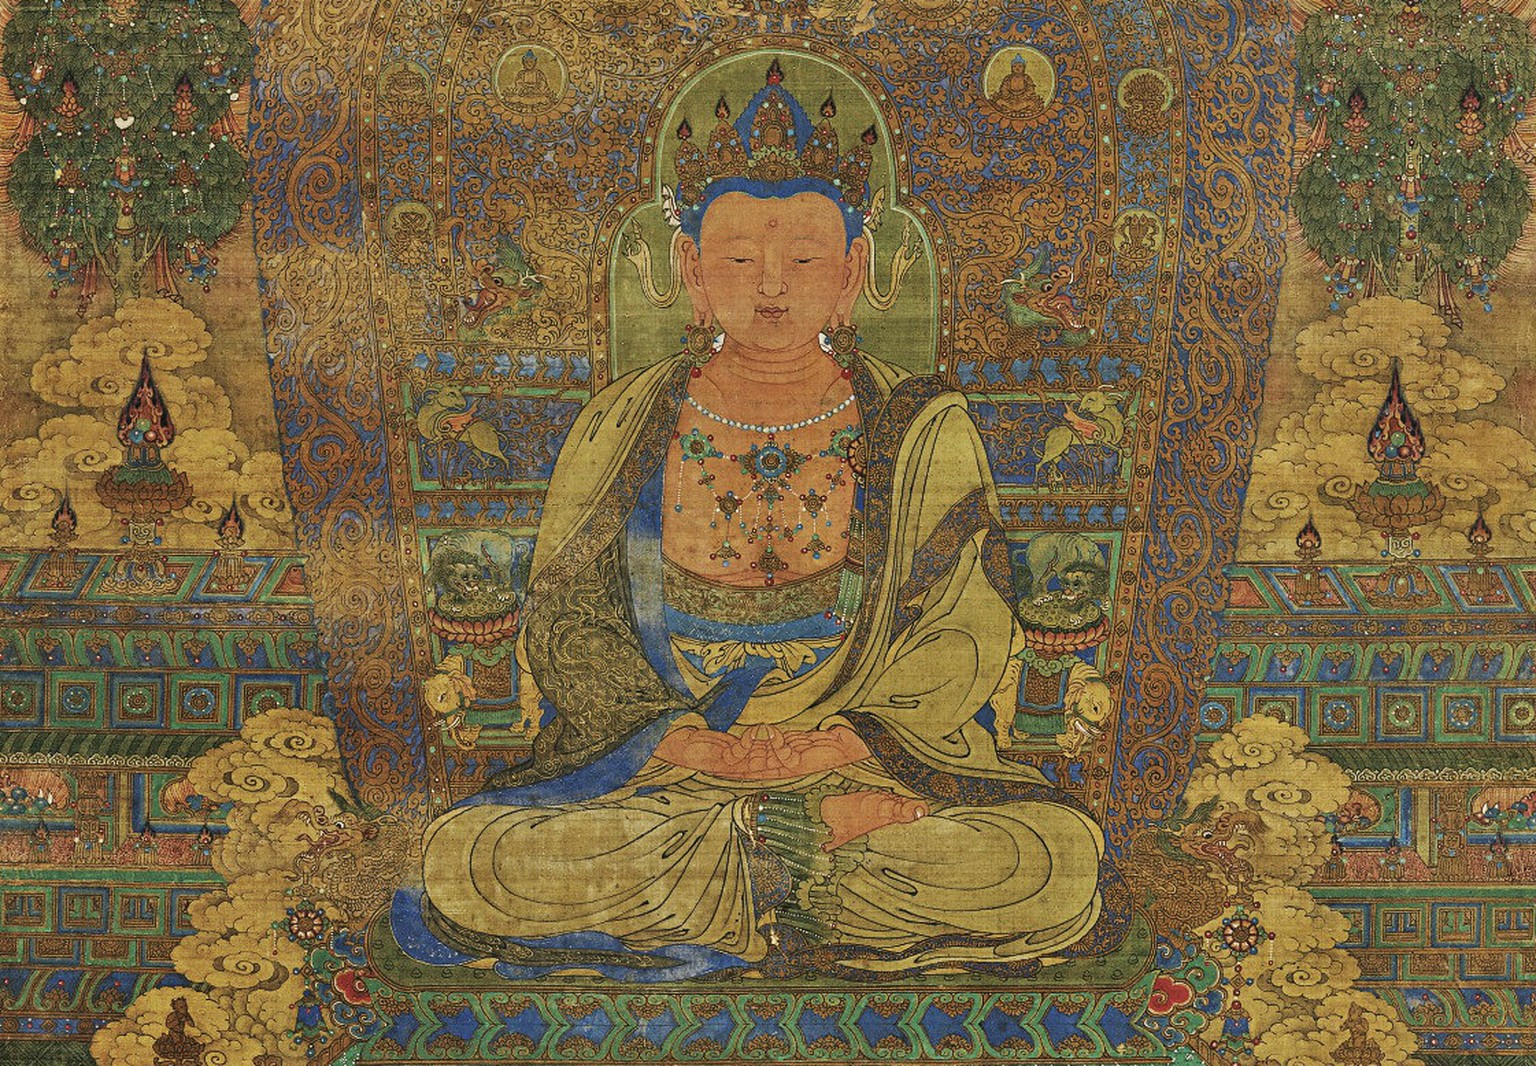 Eine Darstellung von Buddha aus der Ming-Dynastie, China, 15. Jahrhundert.